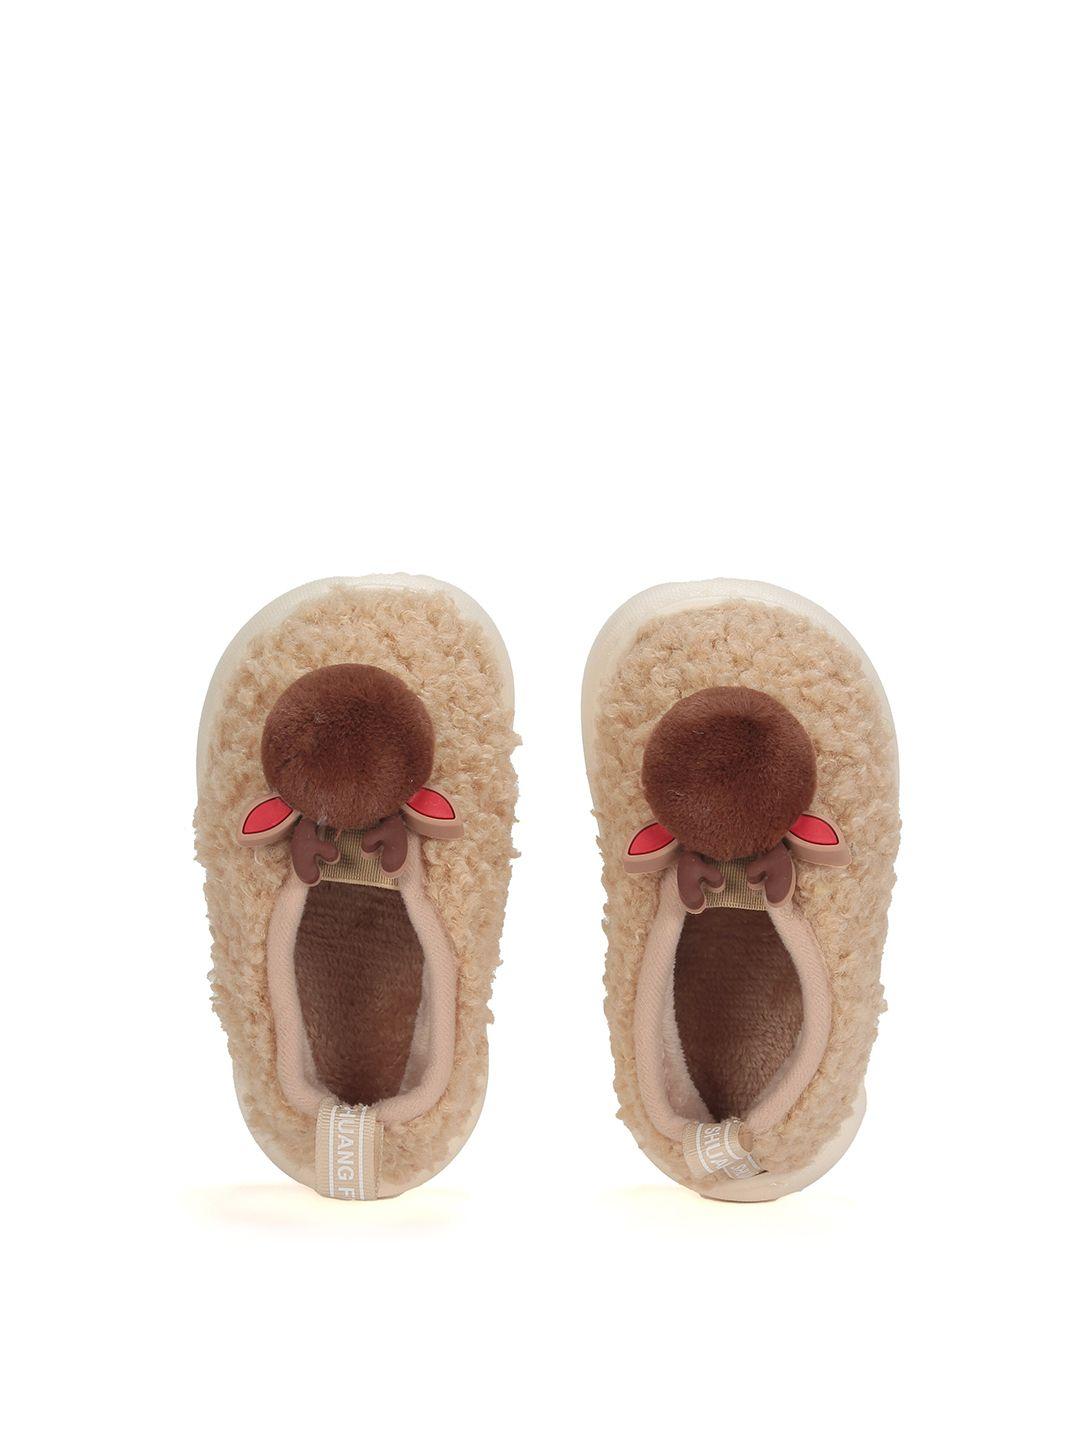 lil lollipop unisex kids beige & brown printed room slippers